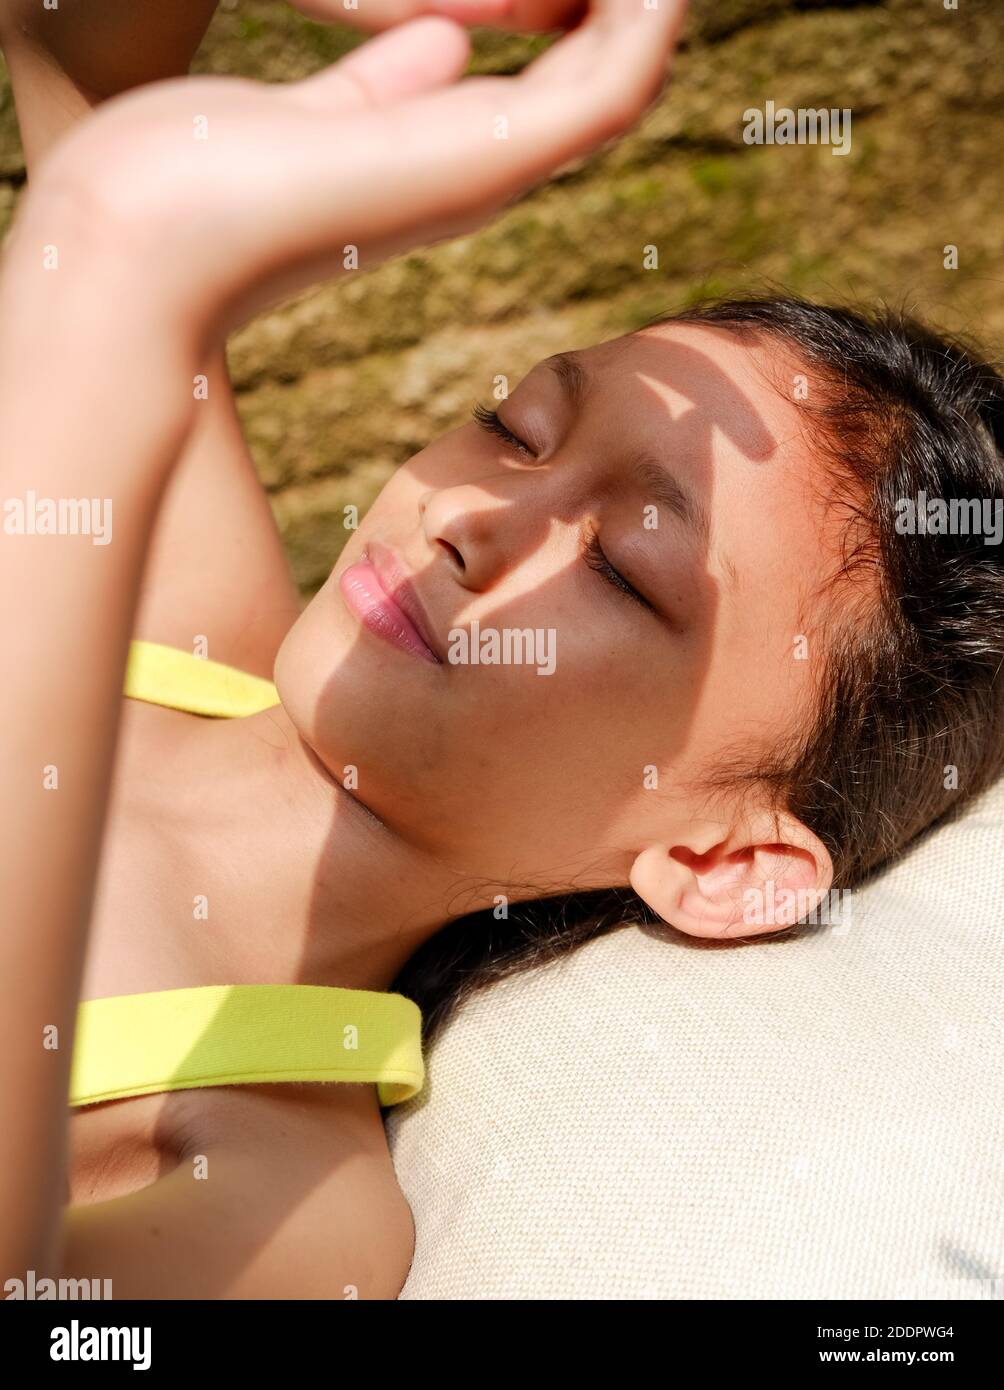 Carina etnia asiatica bambina sdraiata su una panchina, prendere il sole al mattino a casa. Mano che si alza per coprire il viso dalla luce solare dura Foto Stock